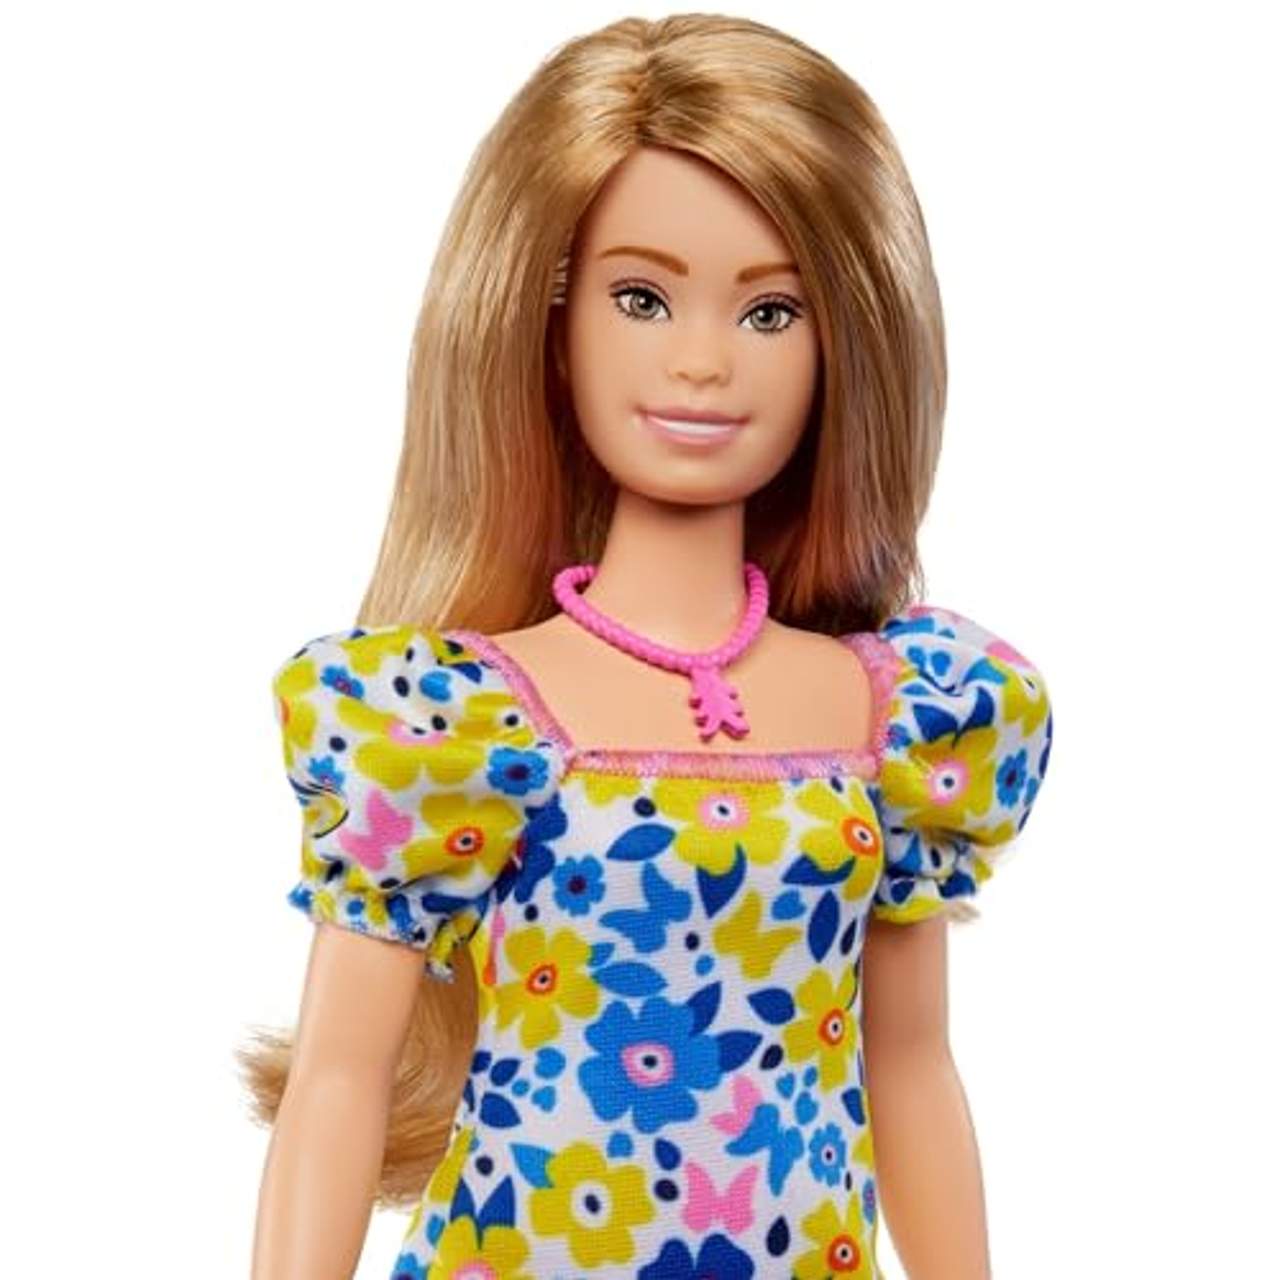 Barbie Fashionistas Puppe entwickelt